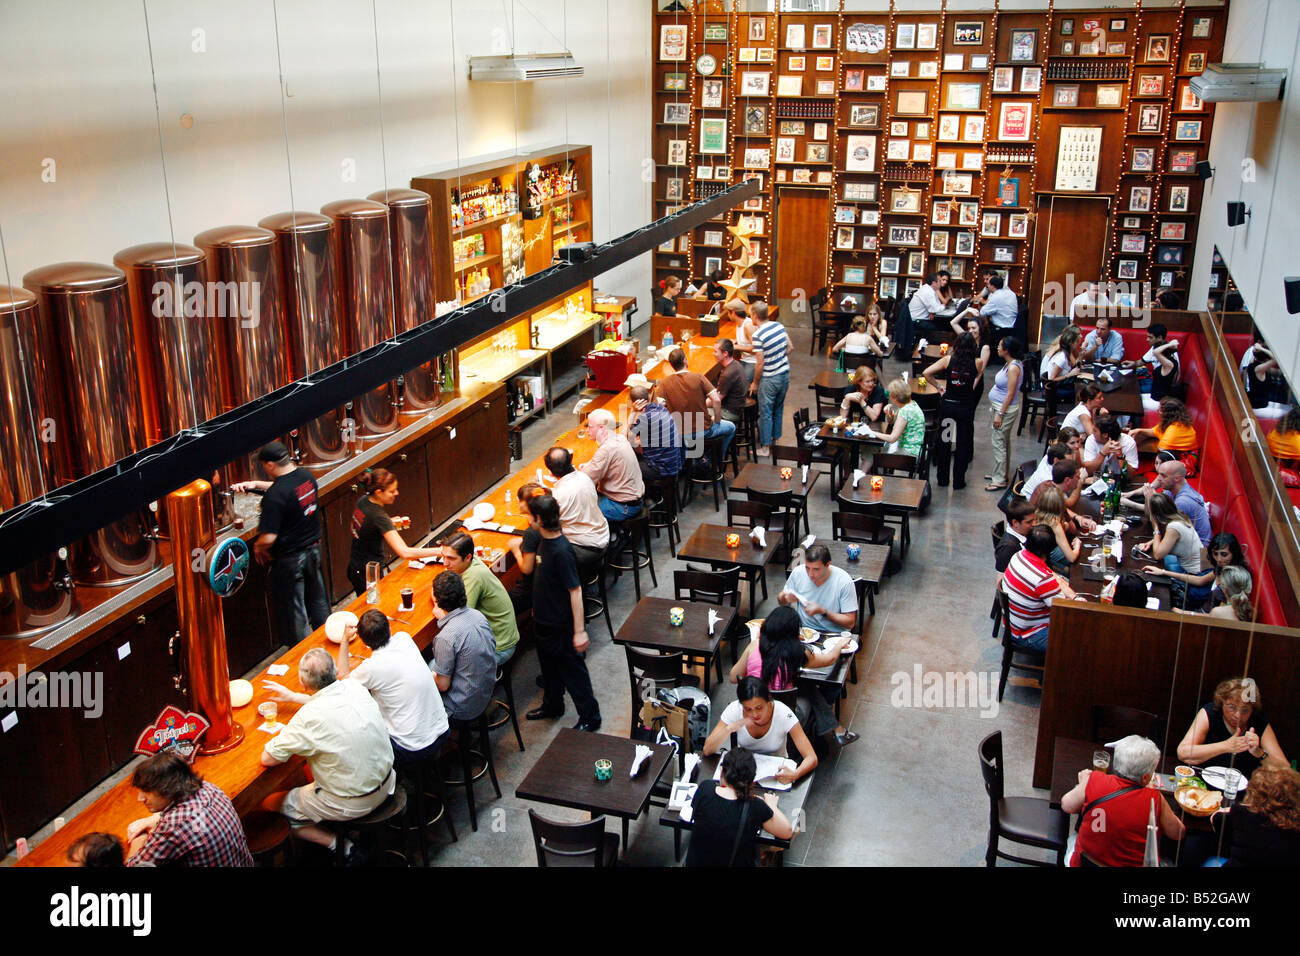 Marzo 2008 - gente sentada en el Antares restaurante en la zona de moda de Palermo Viejo conocido como Soho Buenos Aires Argentina Foto de stock